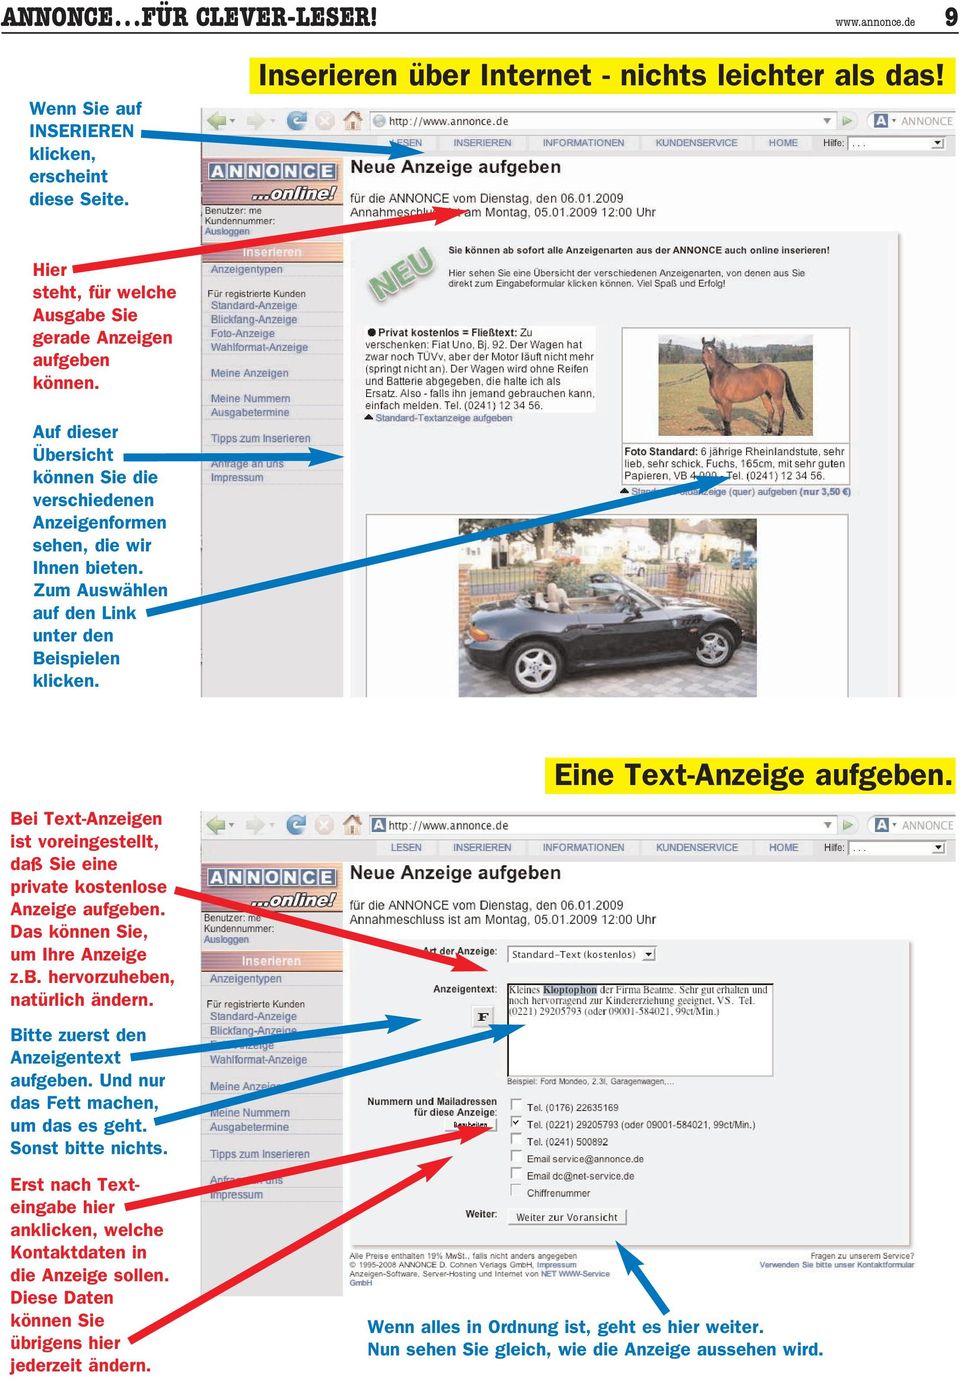 Zum Auswählen auf den Link unter den Beispielen klicken. Eine Text-Anzeige aufgeben. Bei Text-Anzeigen ist voreingestellt, daß Sie eine private kostenlose Anzeige aufgeben.